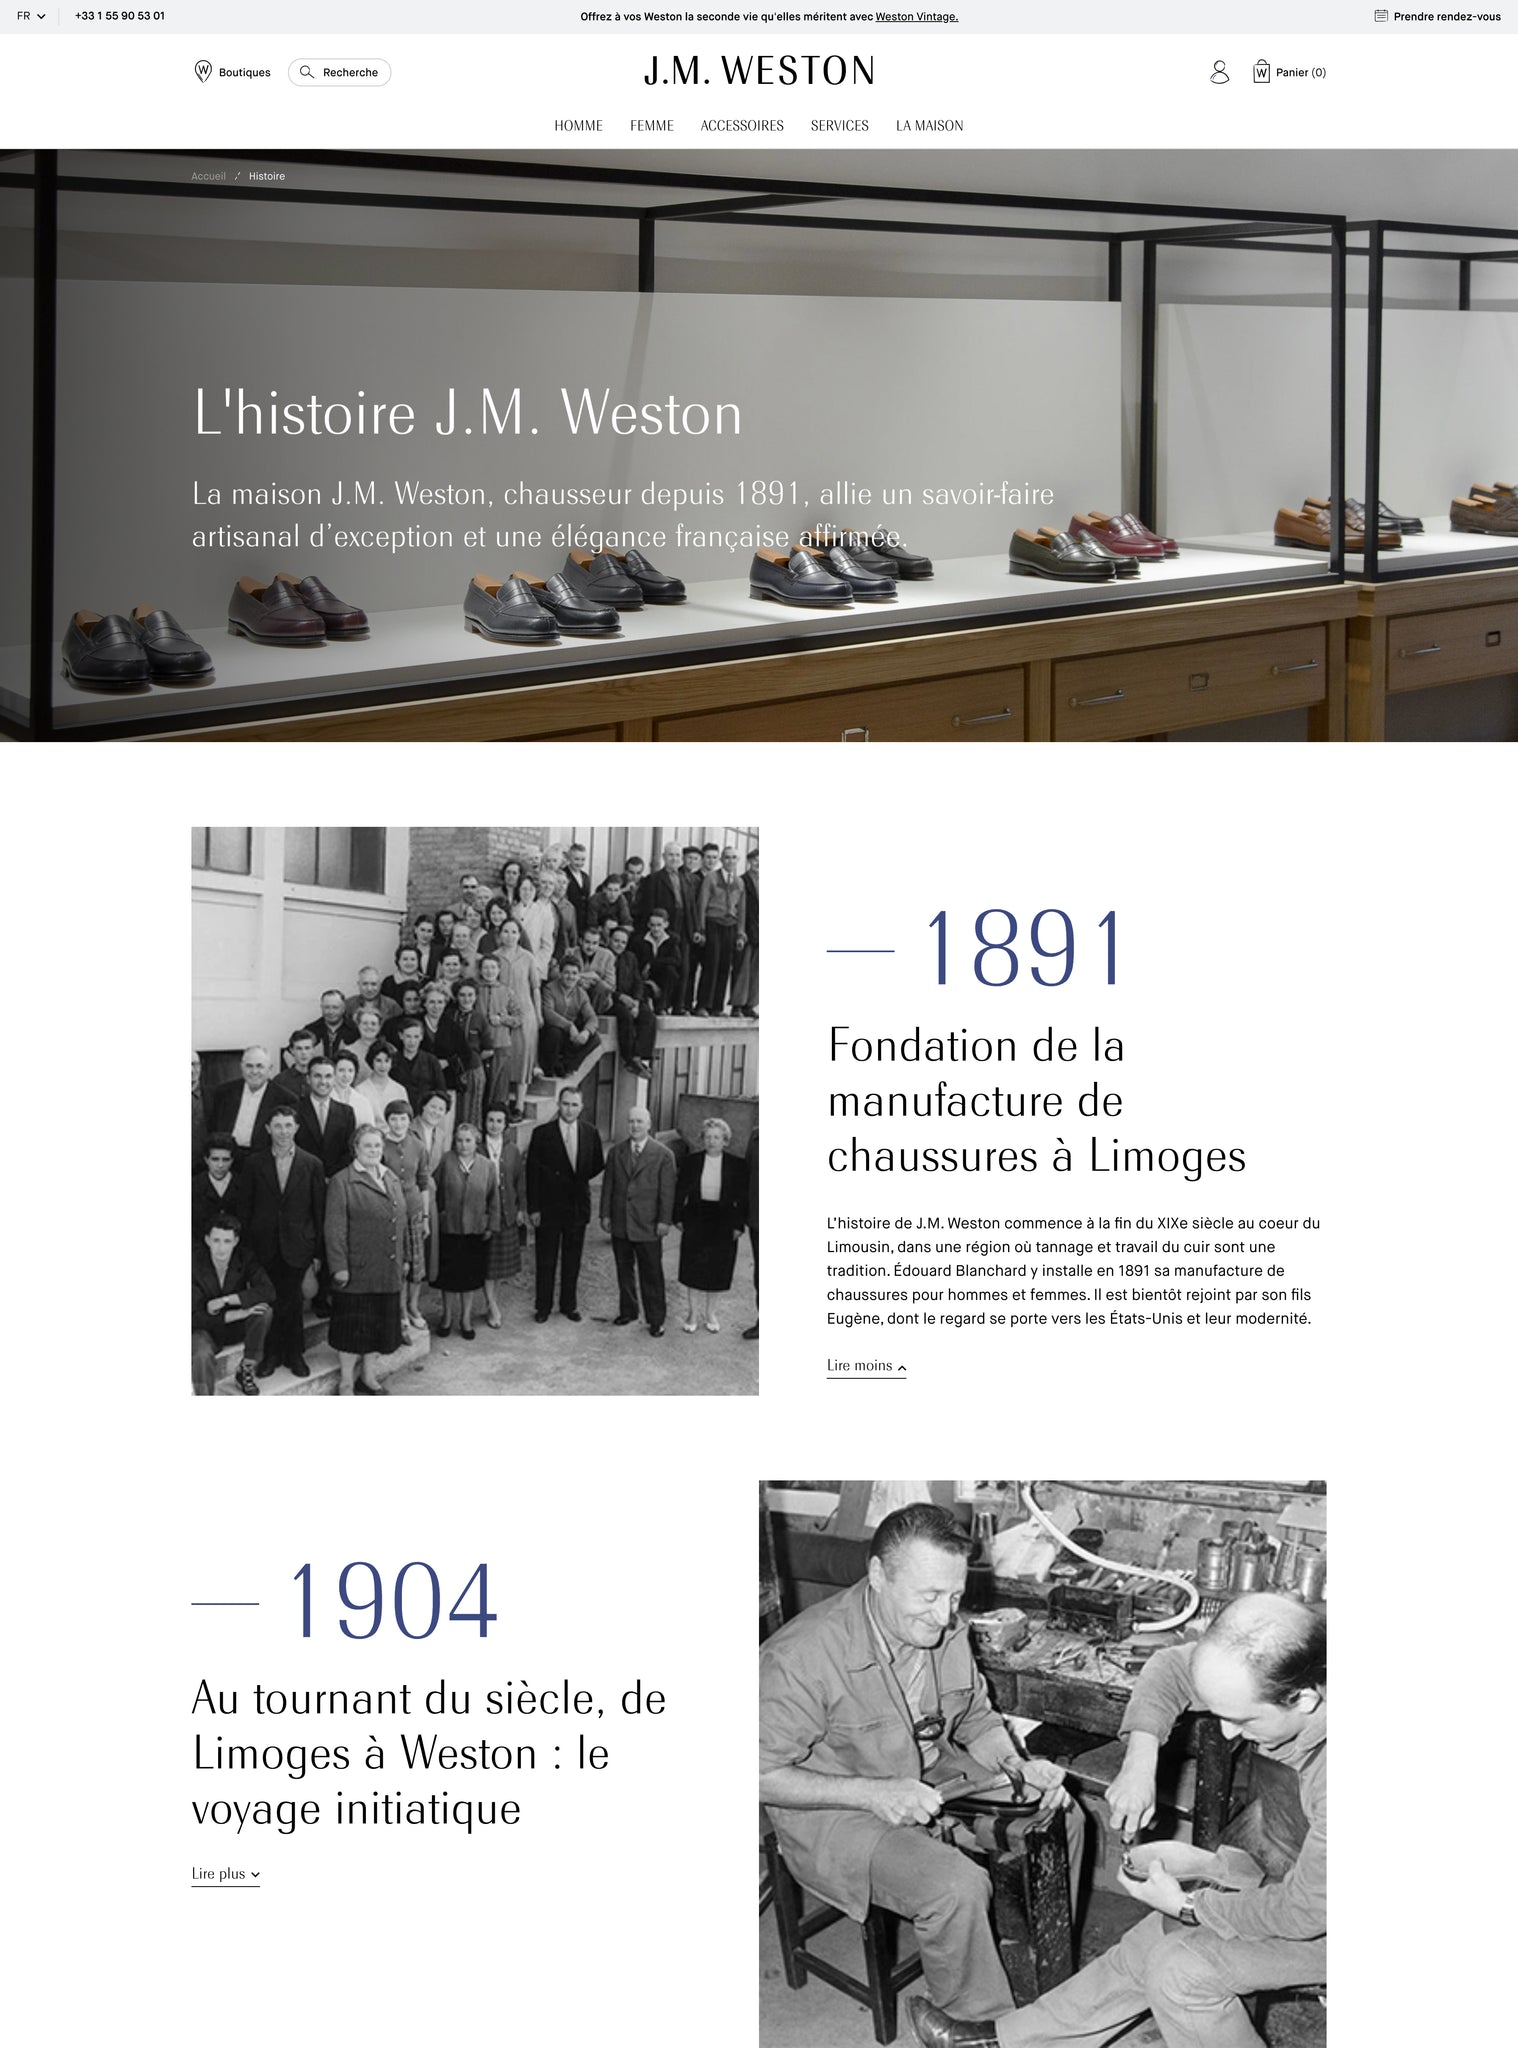 J.M. Weston - Histoire Desktop